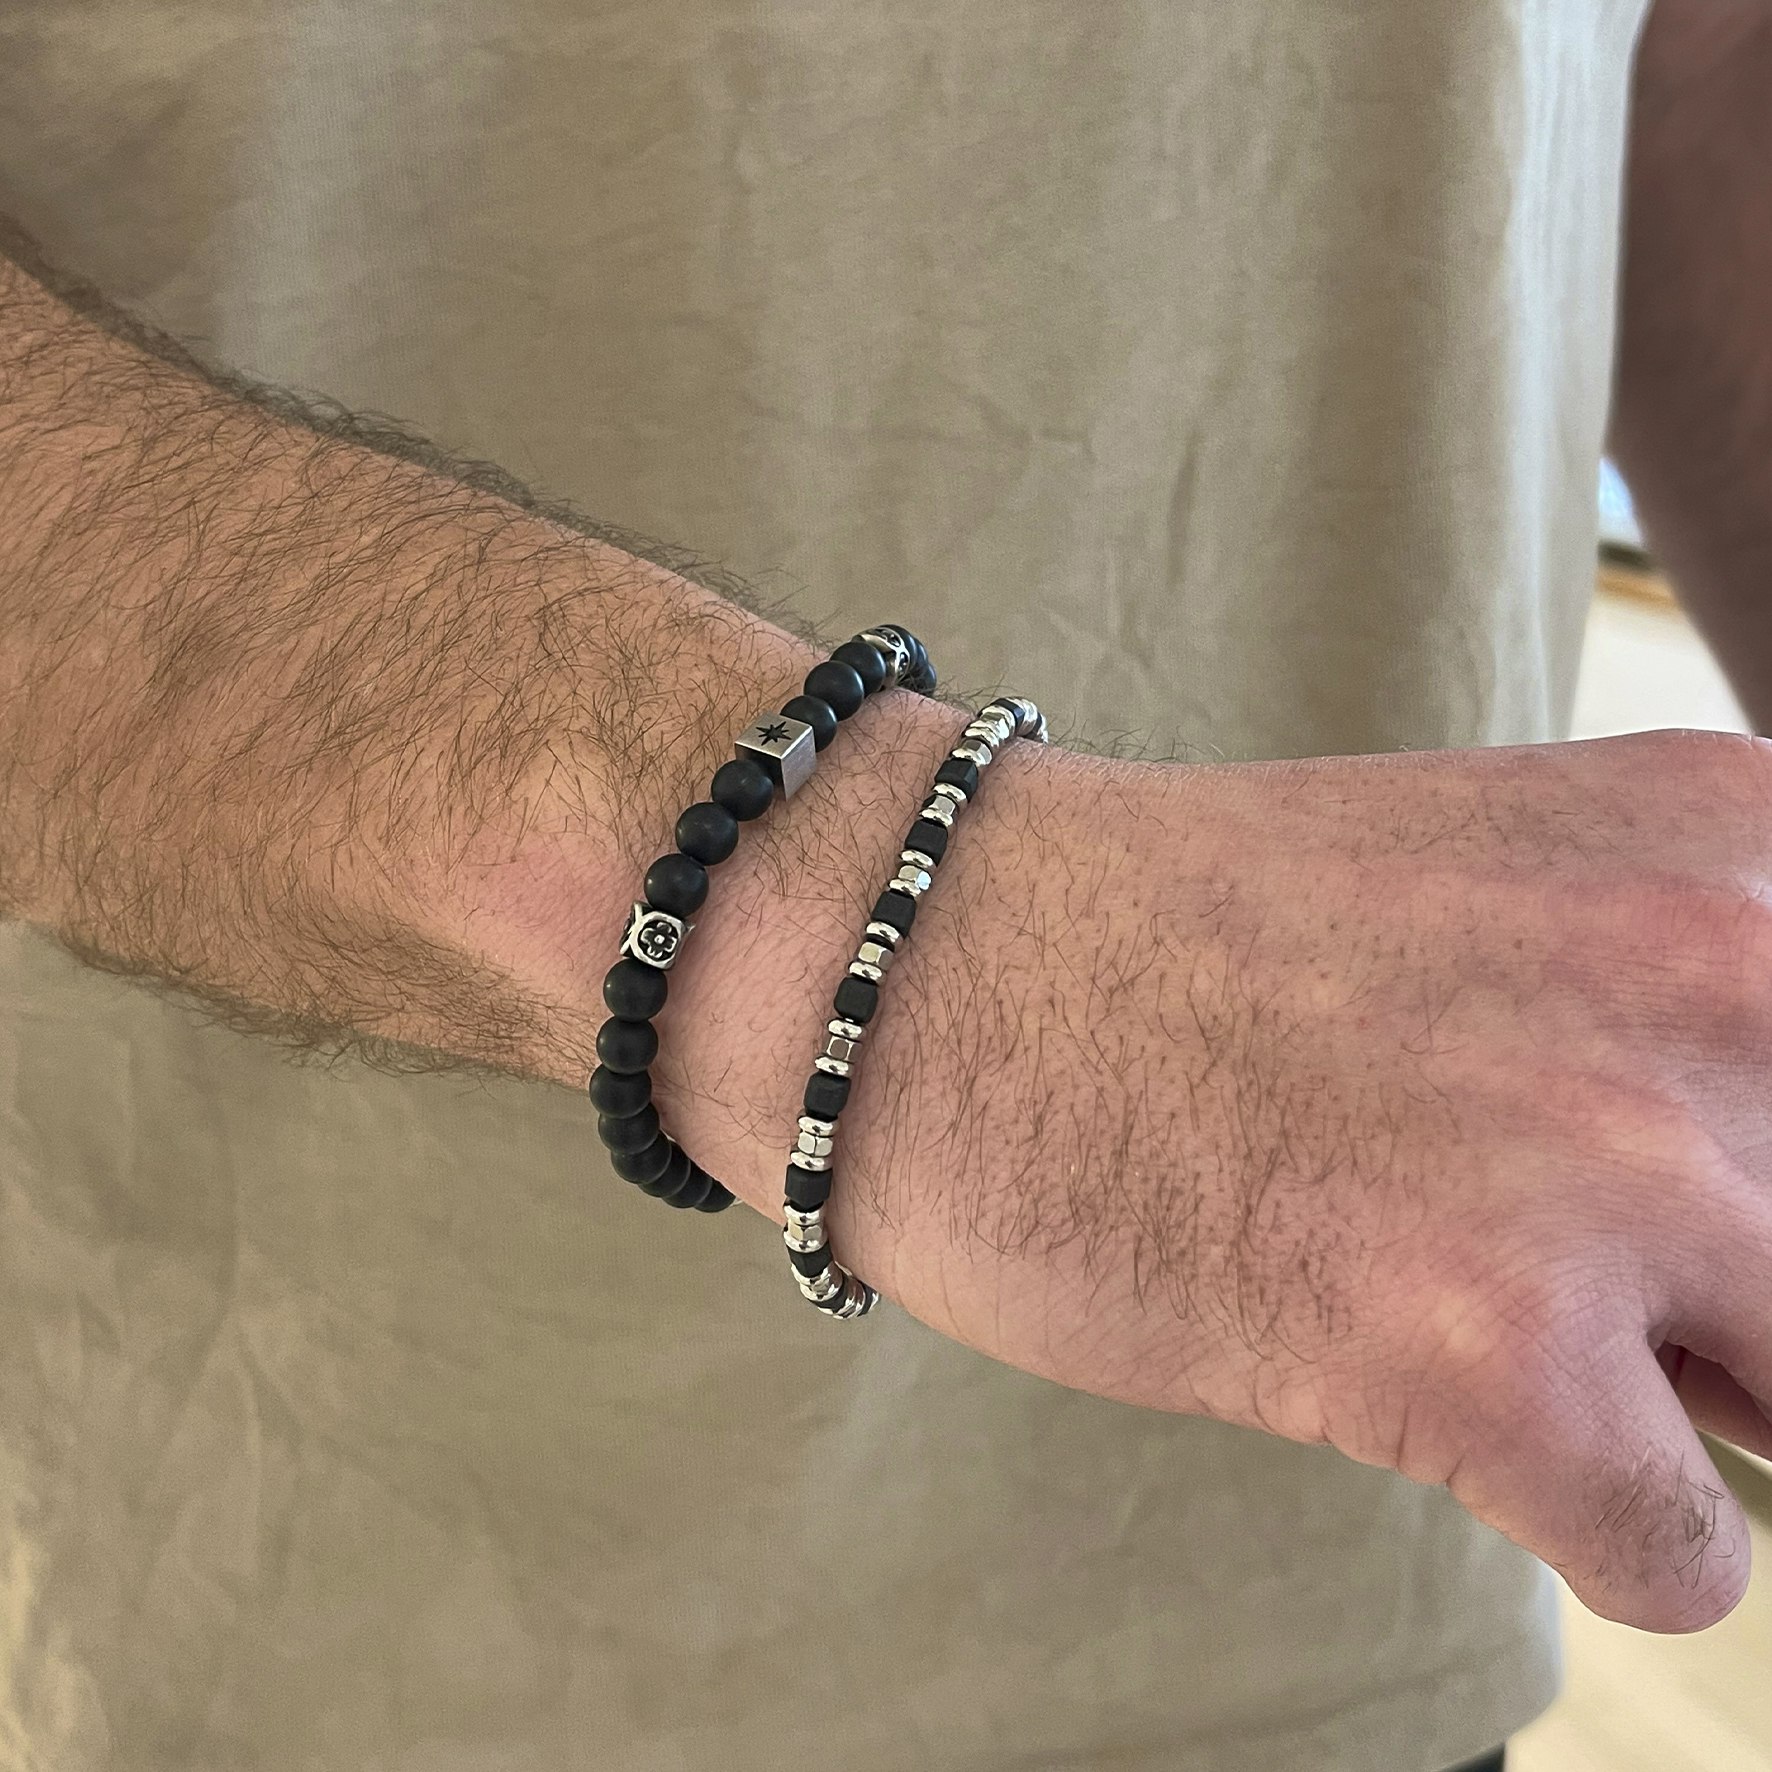 Nohr Bracelet Black Beads von SAMIE in Edelstahl